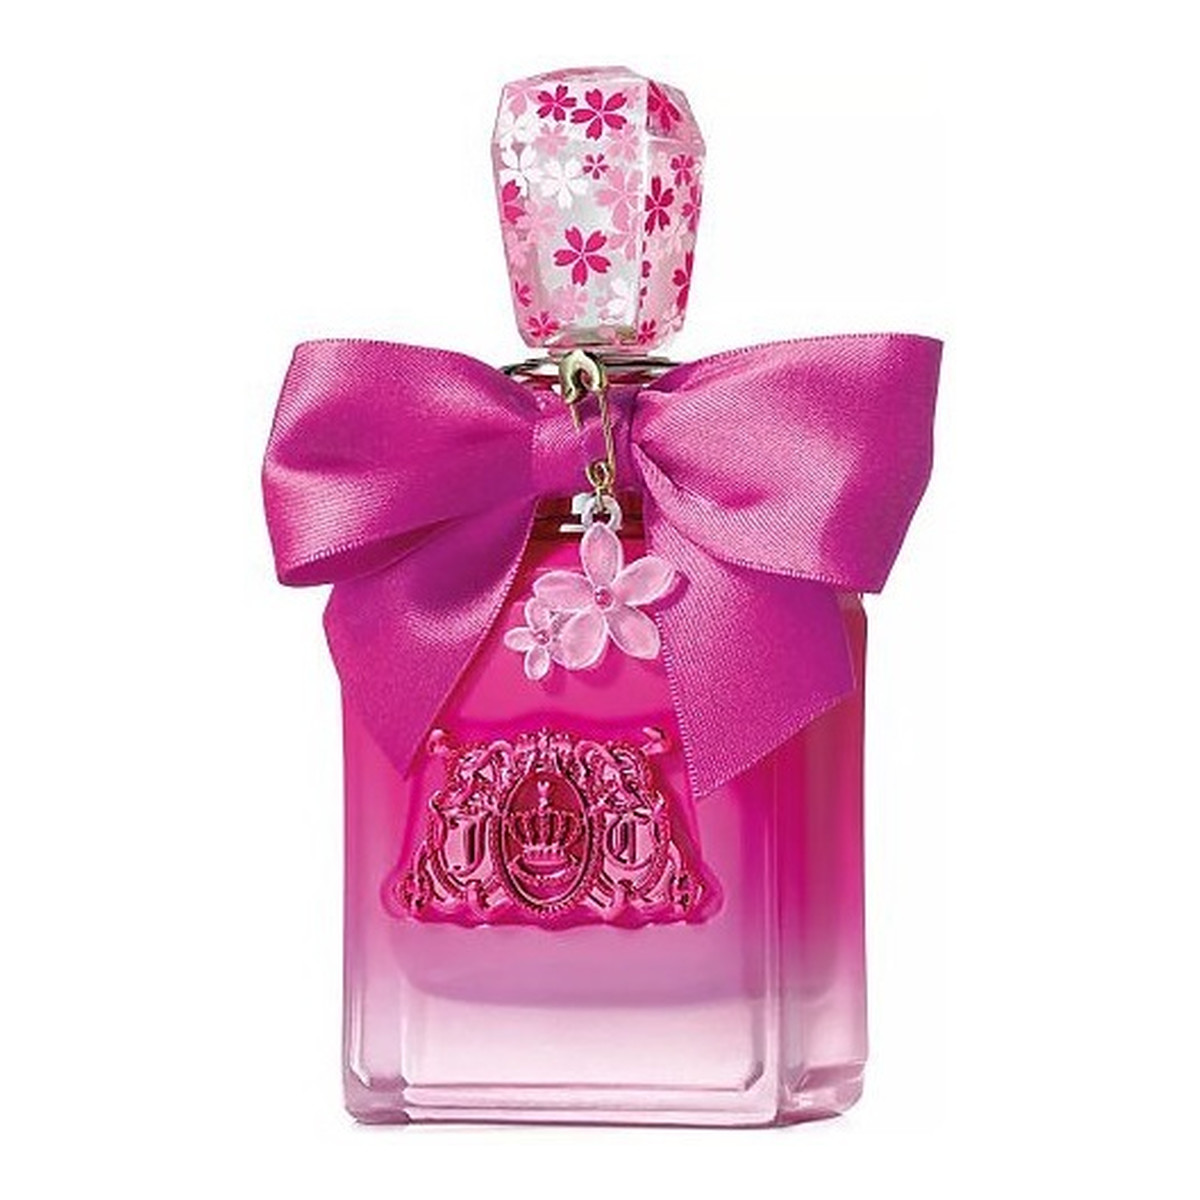 Juicy Couture Viva La Juicy Petals Please Woda perfumowana spray 50ml